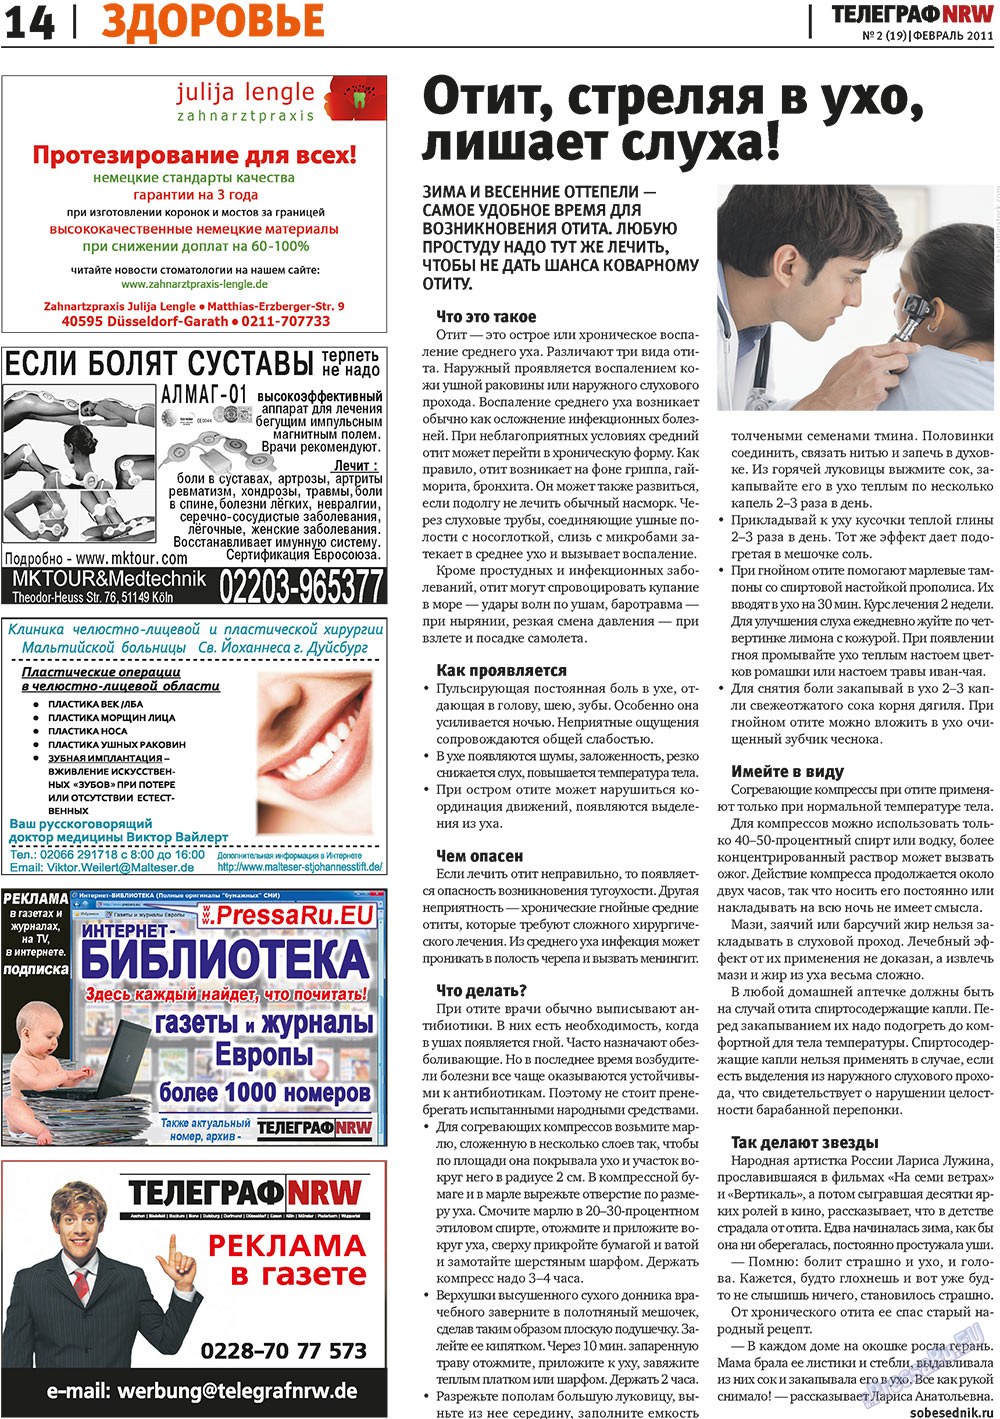 Телеграф NRW (газета). 2011 год, номер 2, стр. 14